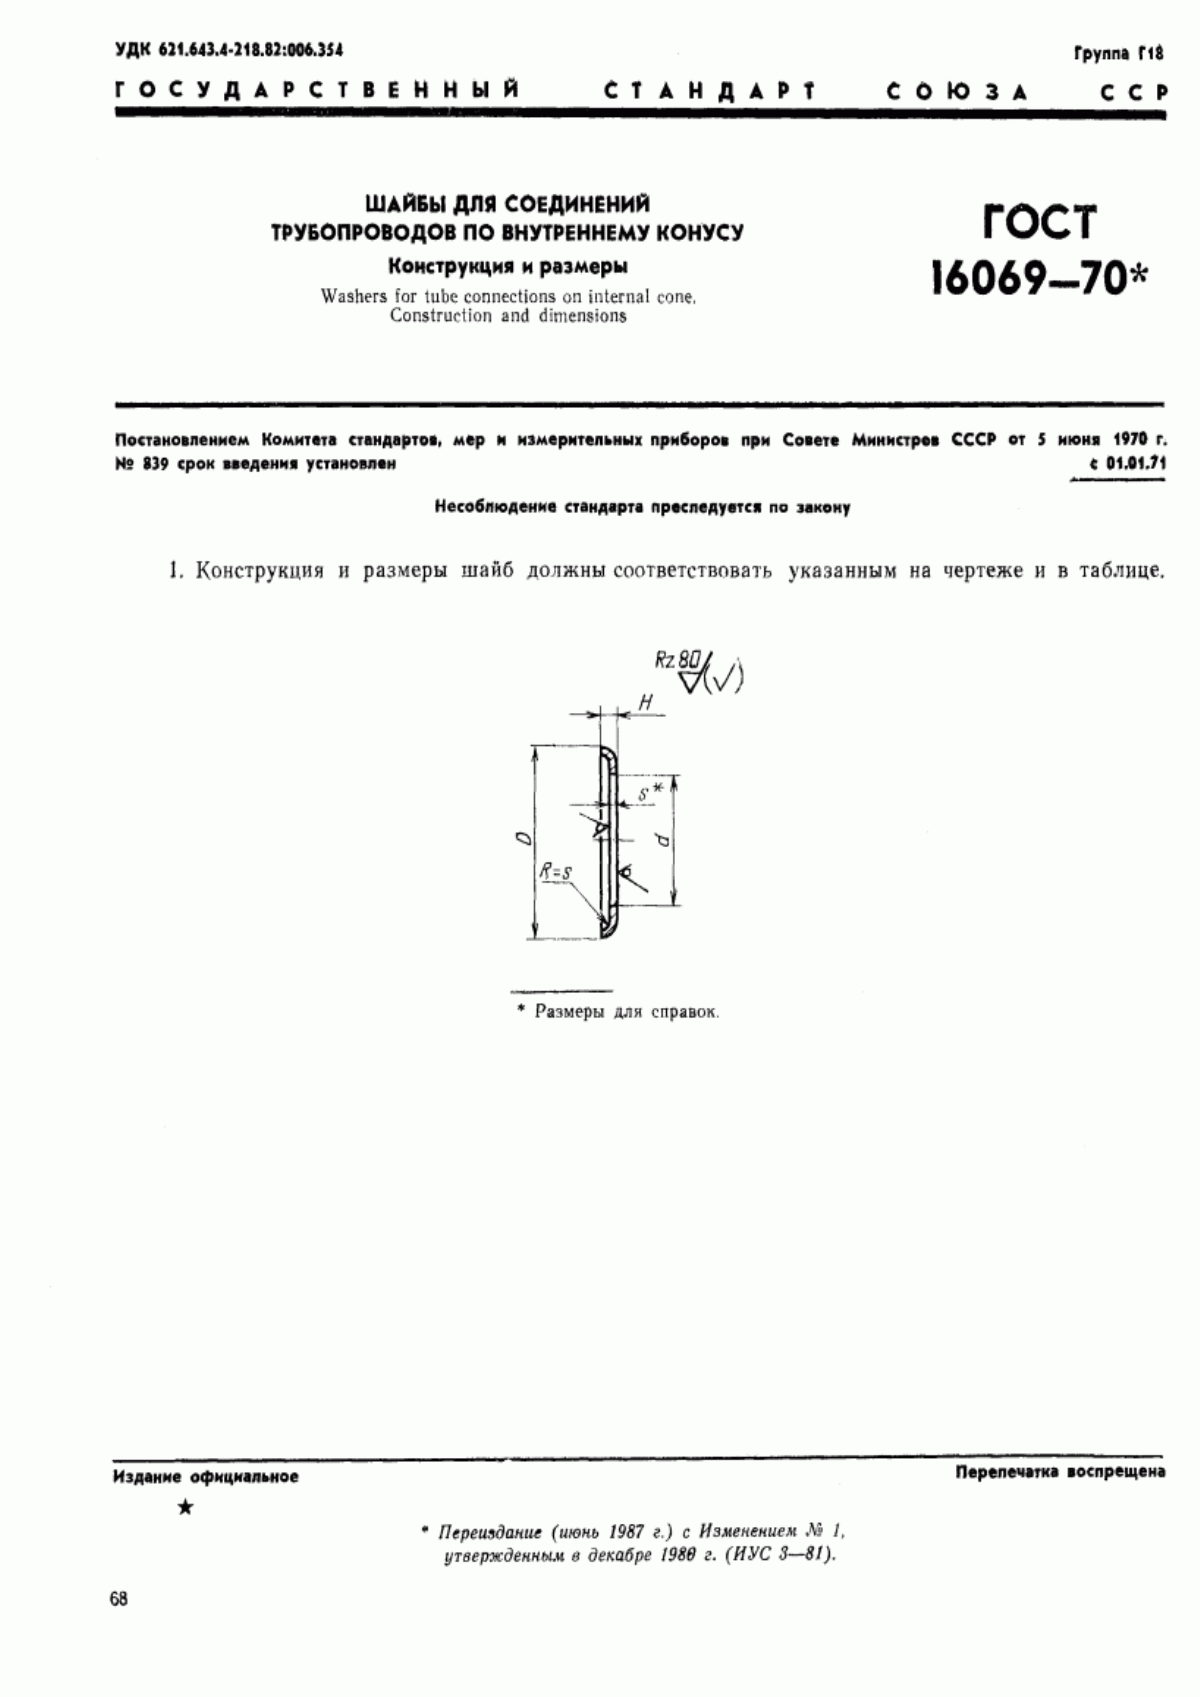 ГОСТ 16069-70 Шайбы для соединений трубопроводов по внутреннему конусу. Конструкция и размеры